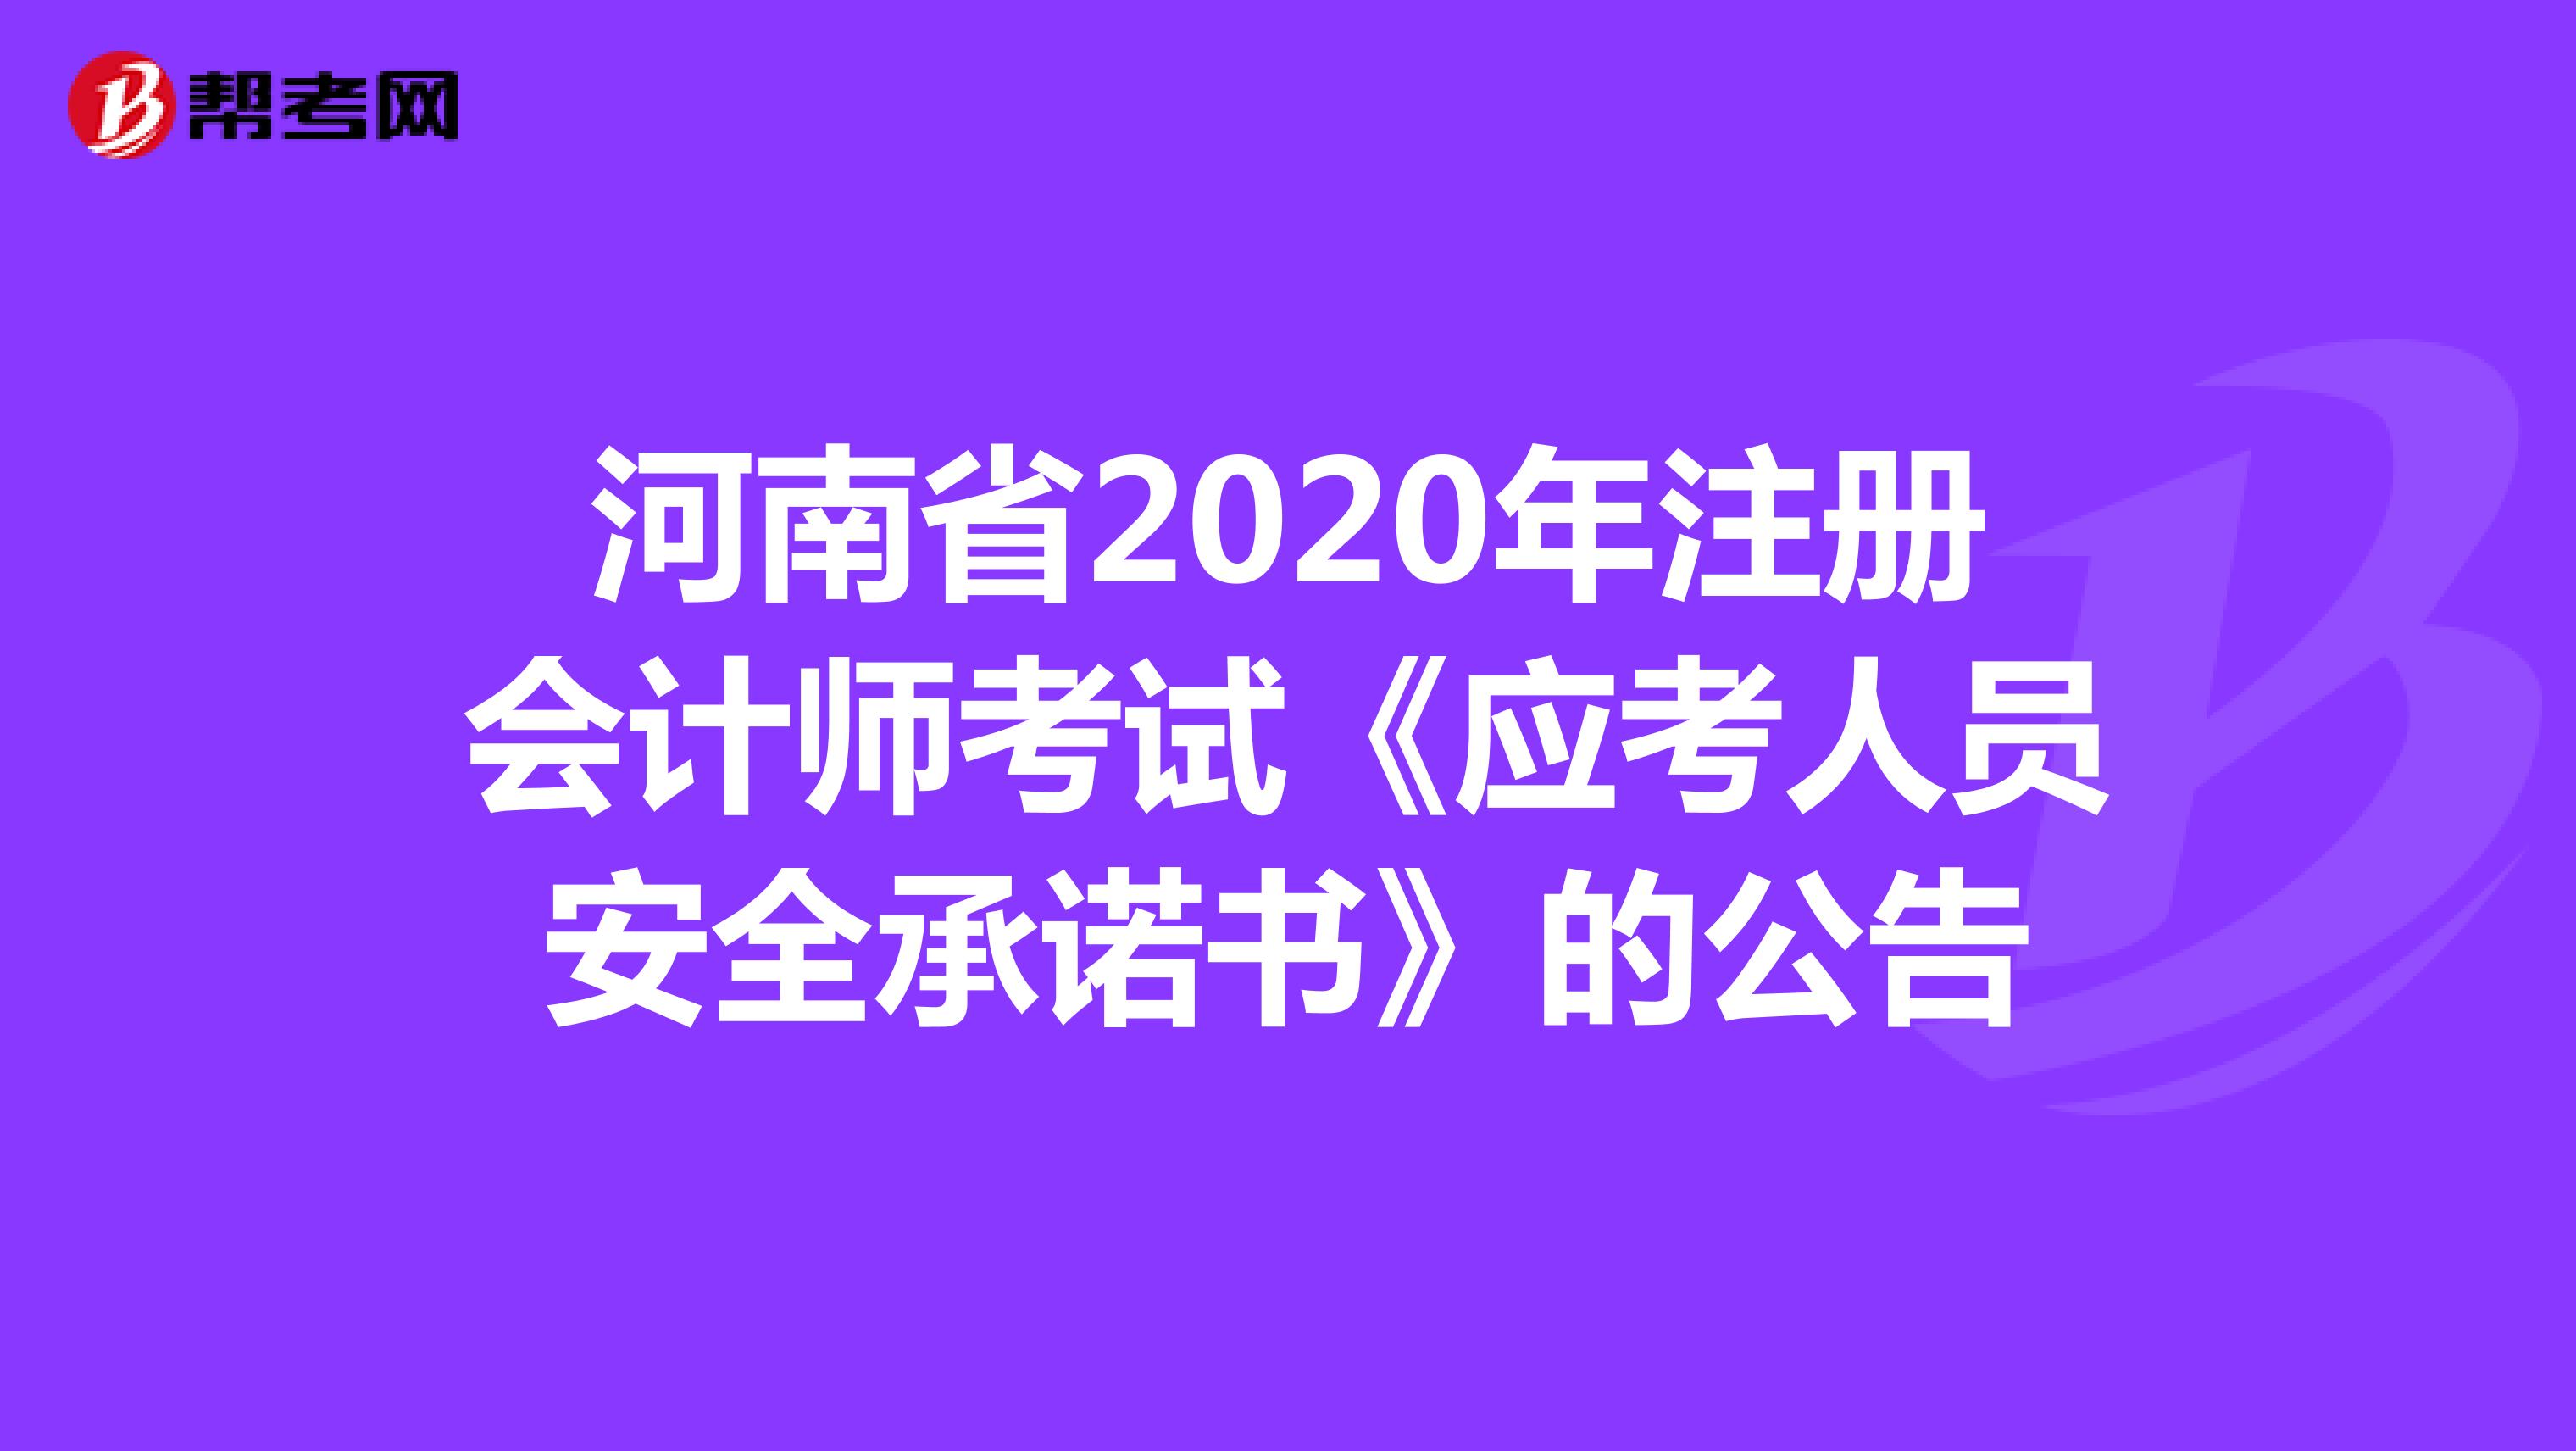 河南省2020年注册会计师考试《应考人员安全承诺书》的公告